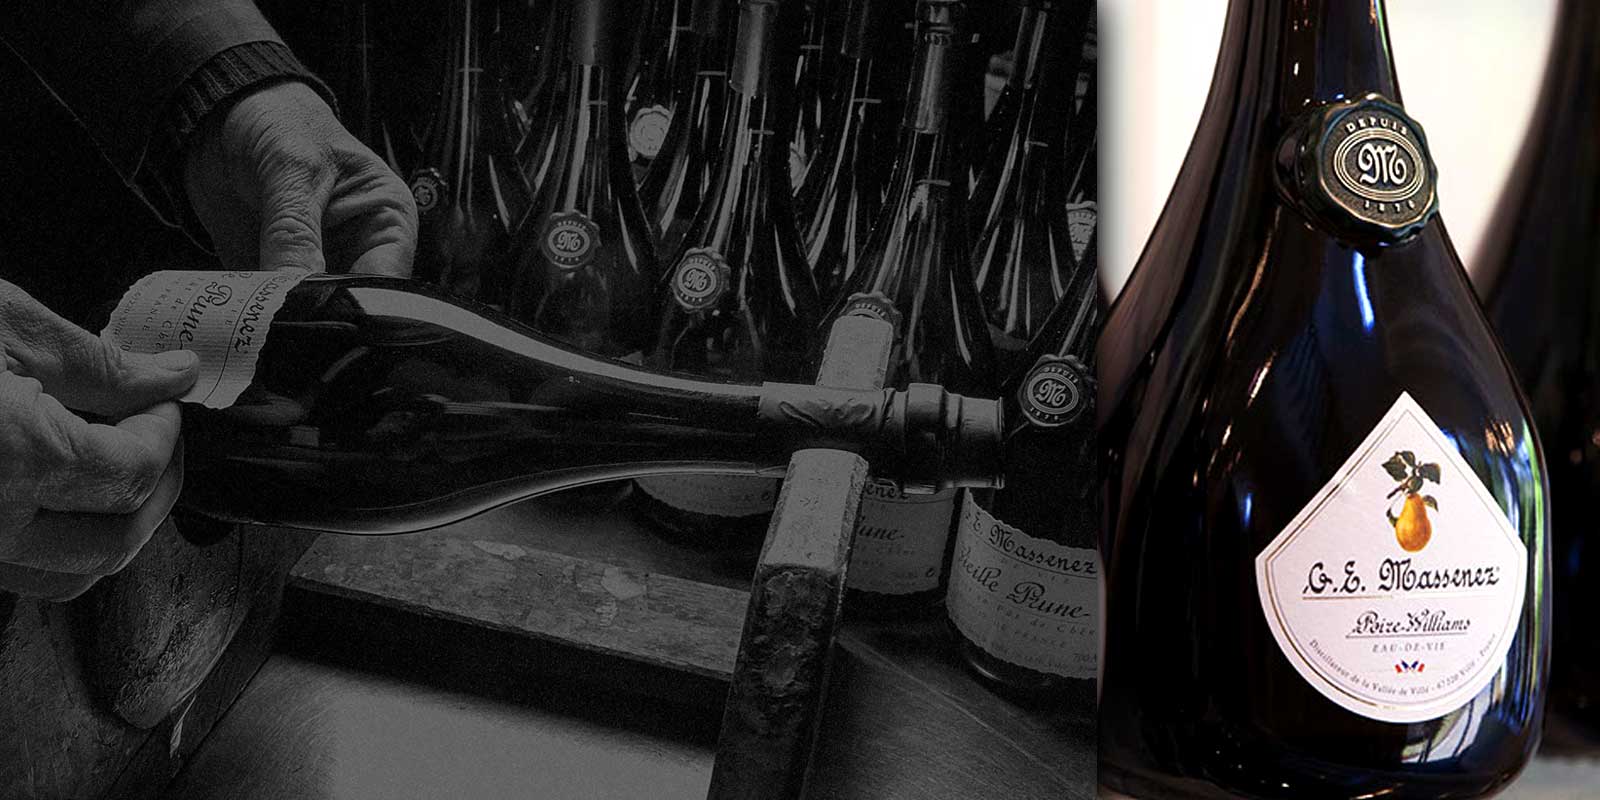 Fina alkoholna pica iz destilerije Massenez Povijest destilerije Massenez seze u 1870. godinu, kada je Jean-Baptiste Massenez radio kao destiler u Val de Villeu u Urbeisu.